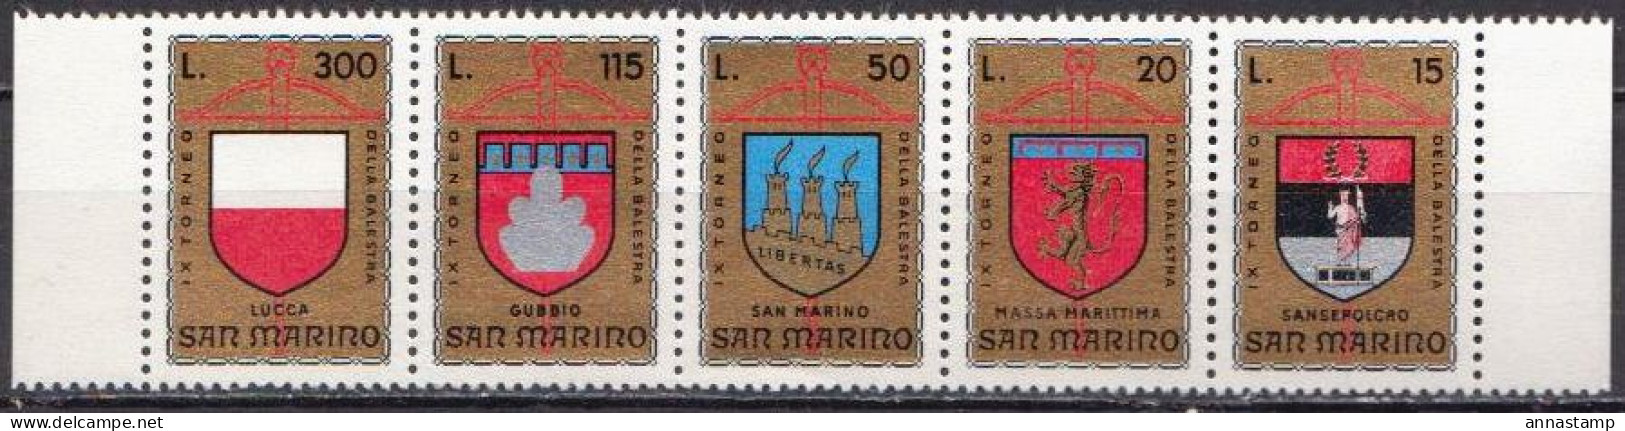 San Marino MNH Set - Timbres